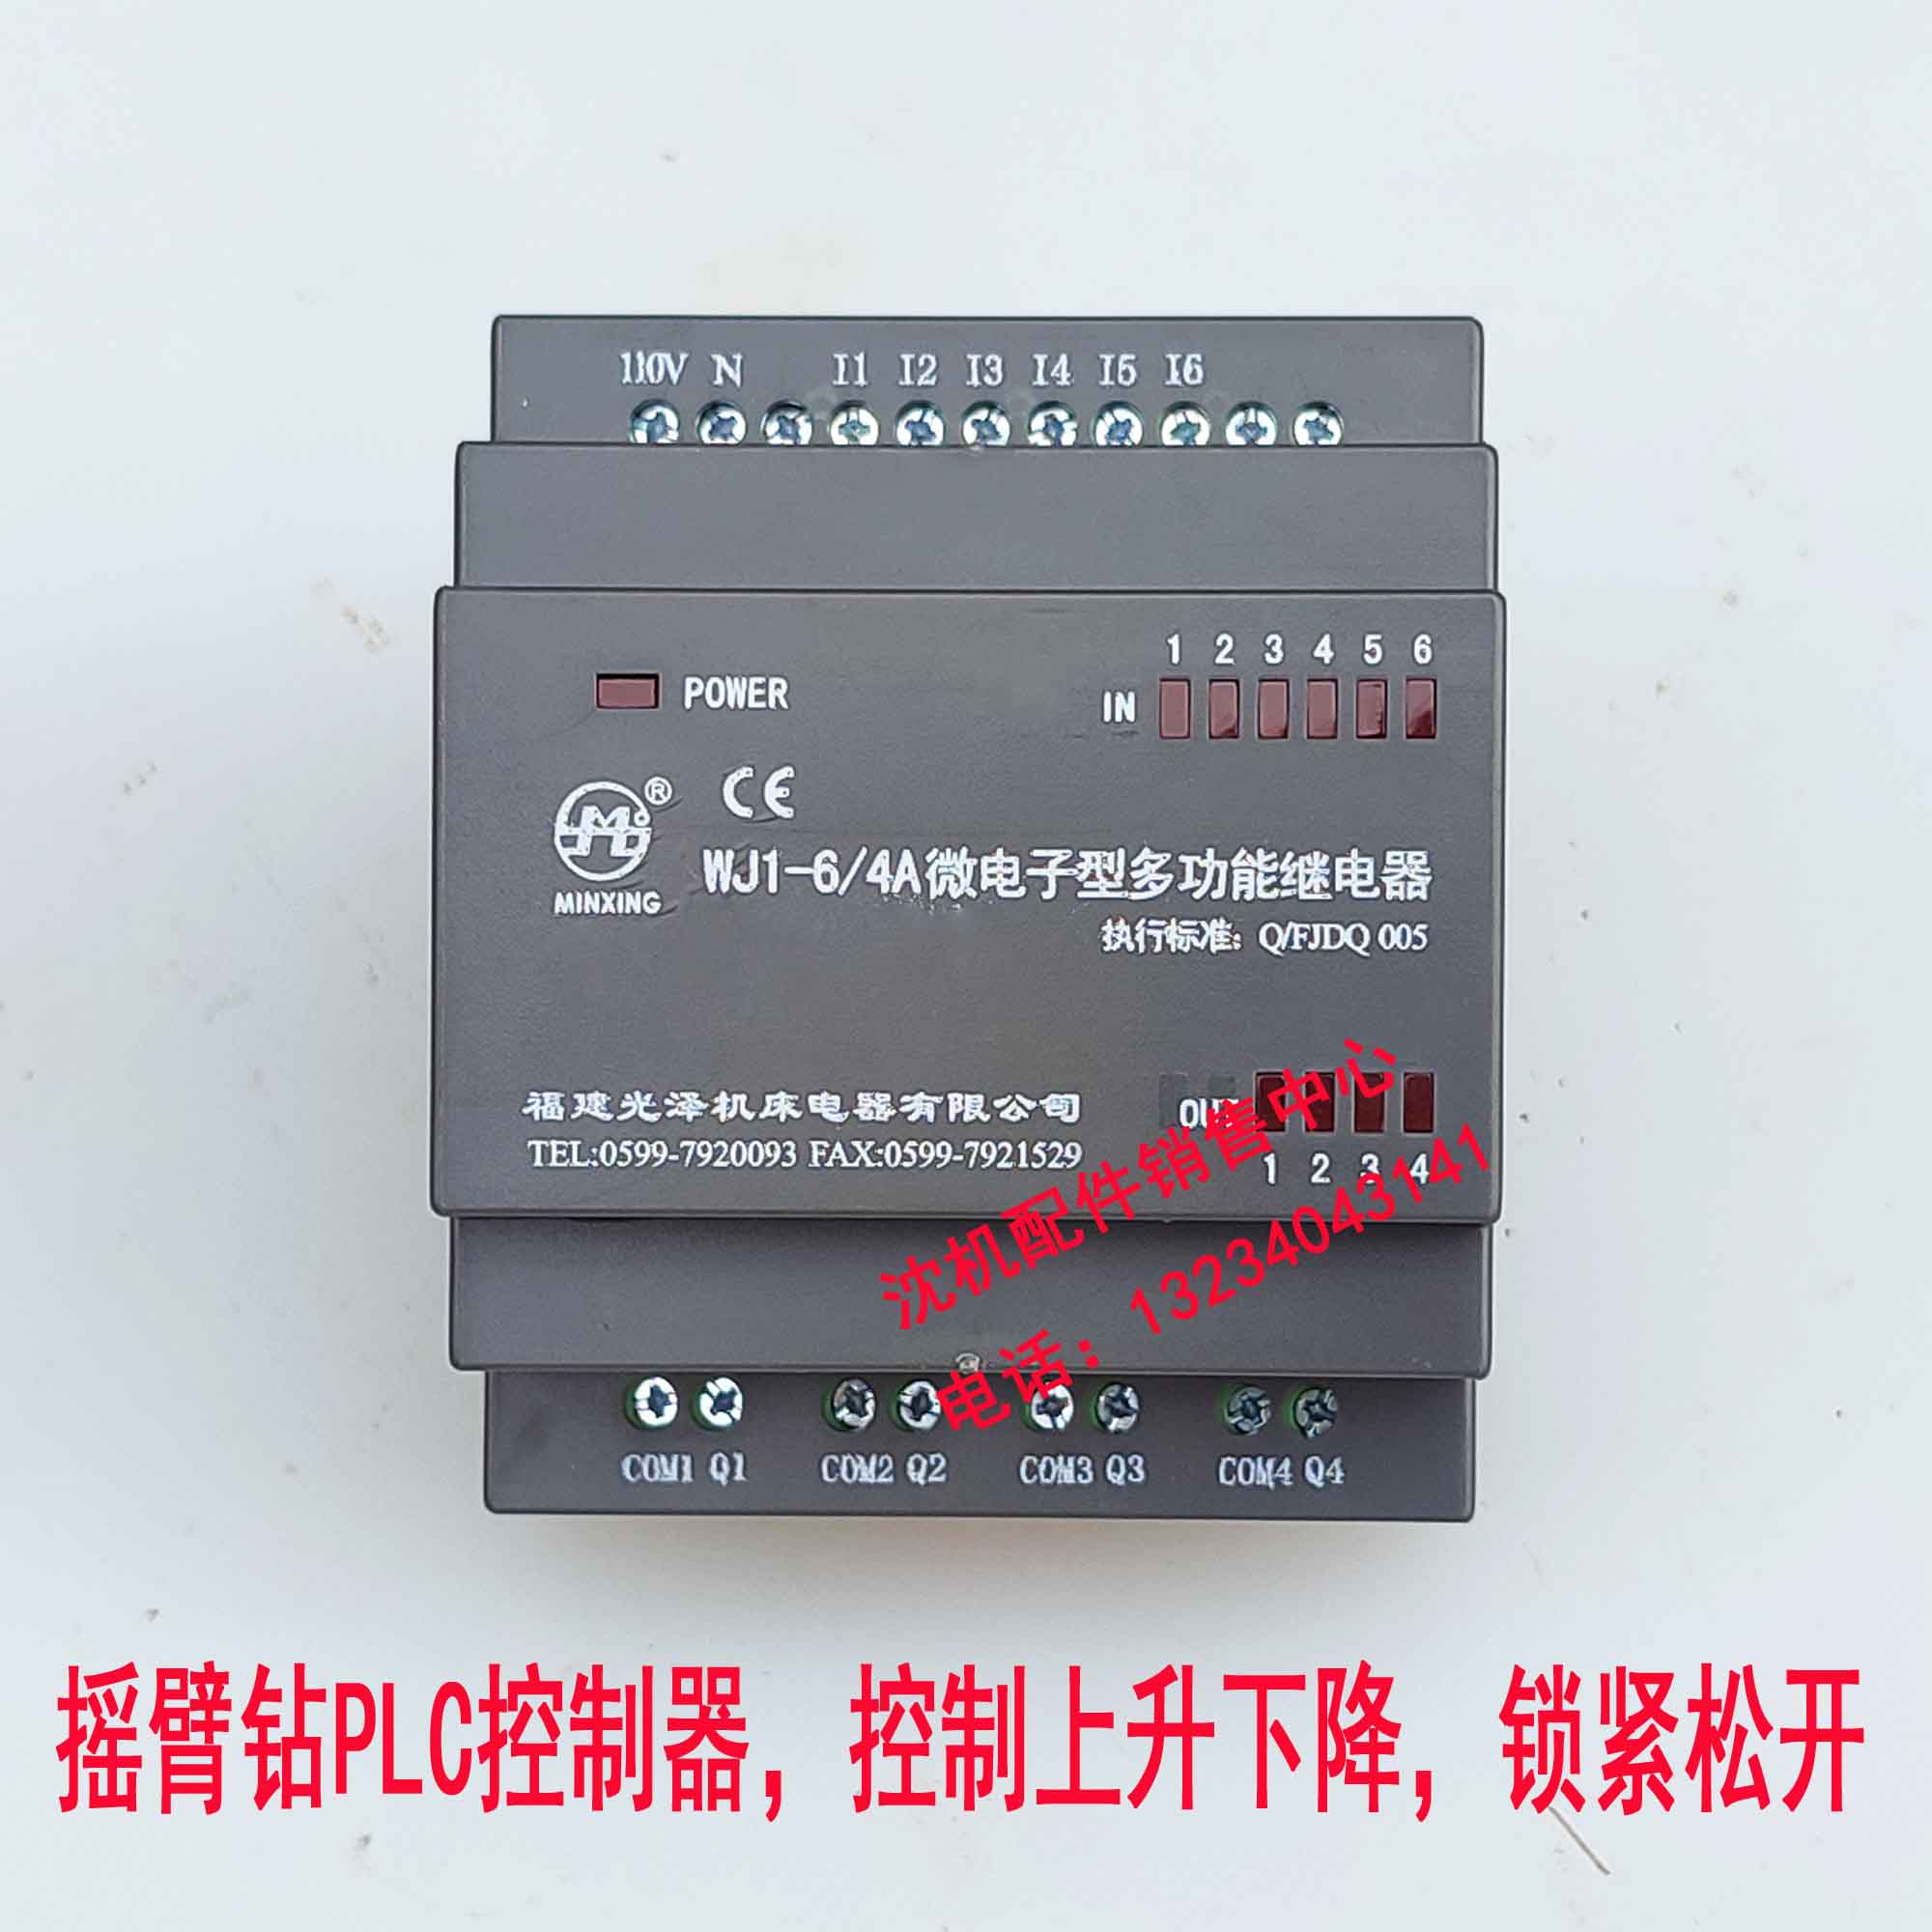 沈阳中捷钻床Z3040 Z3050福建光泽 WJ164 微电子型多功能继电器